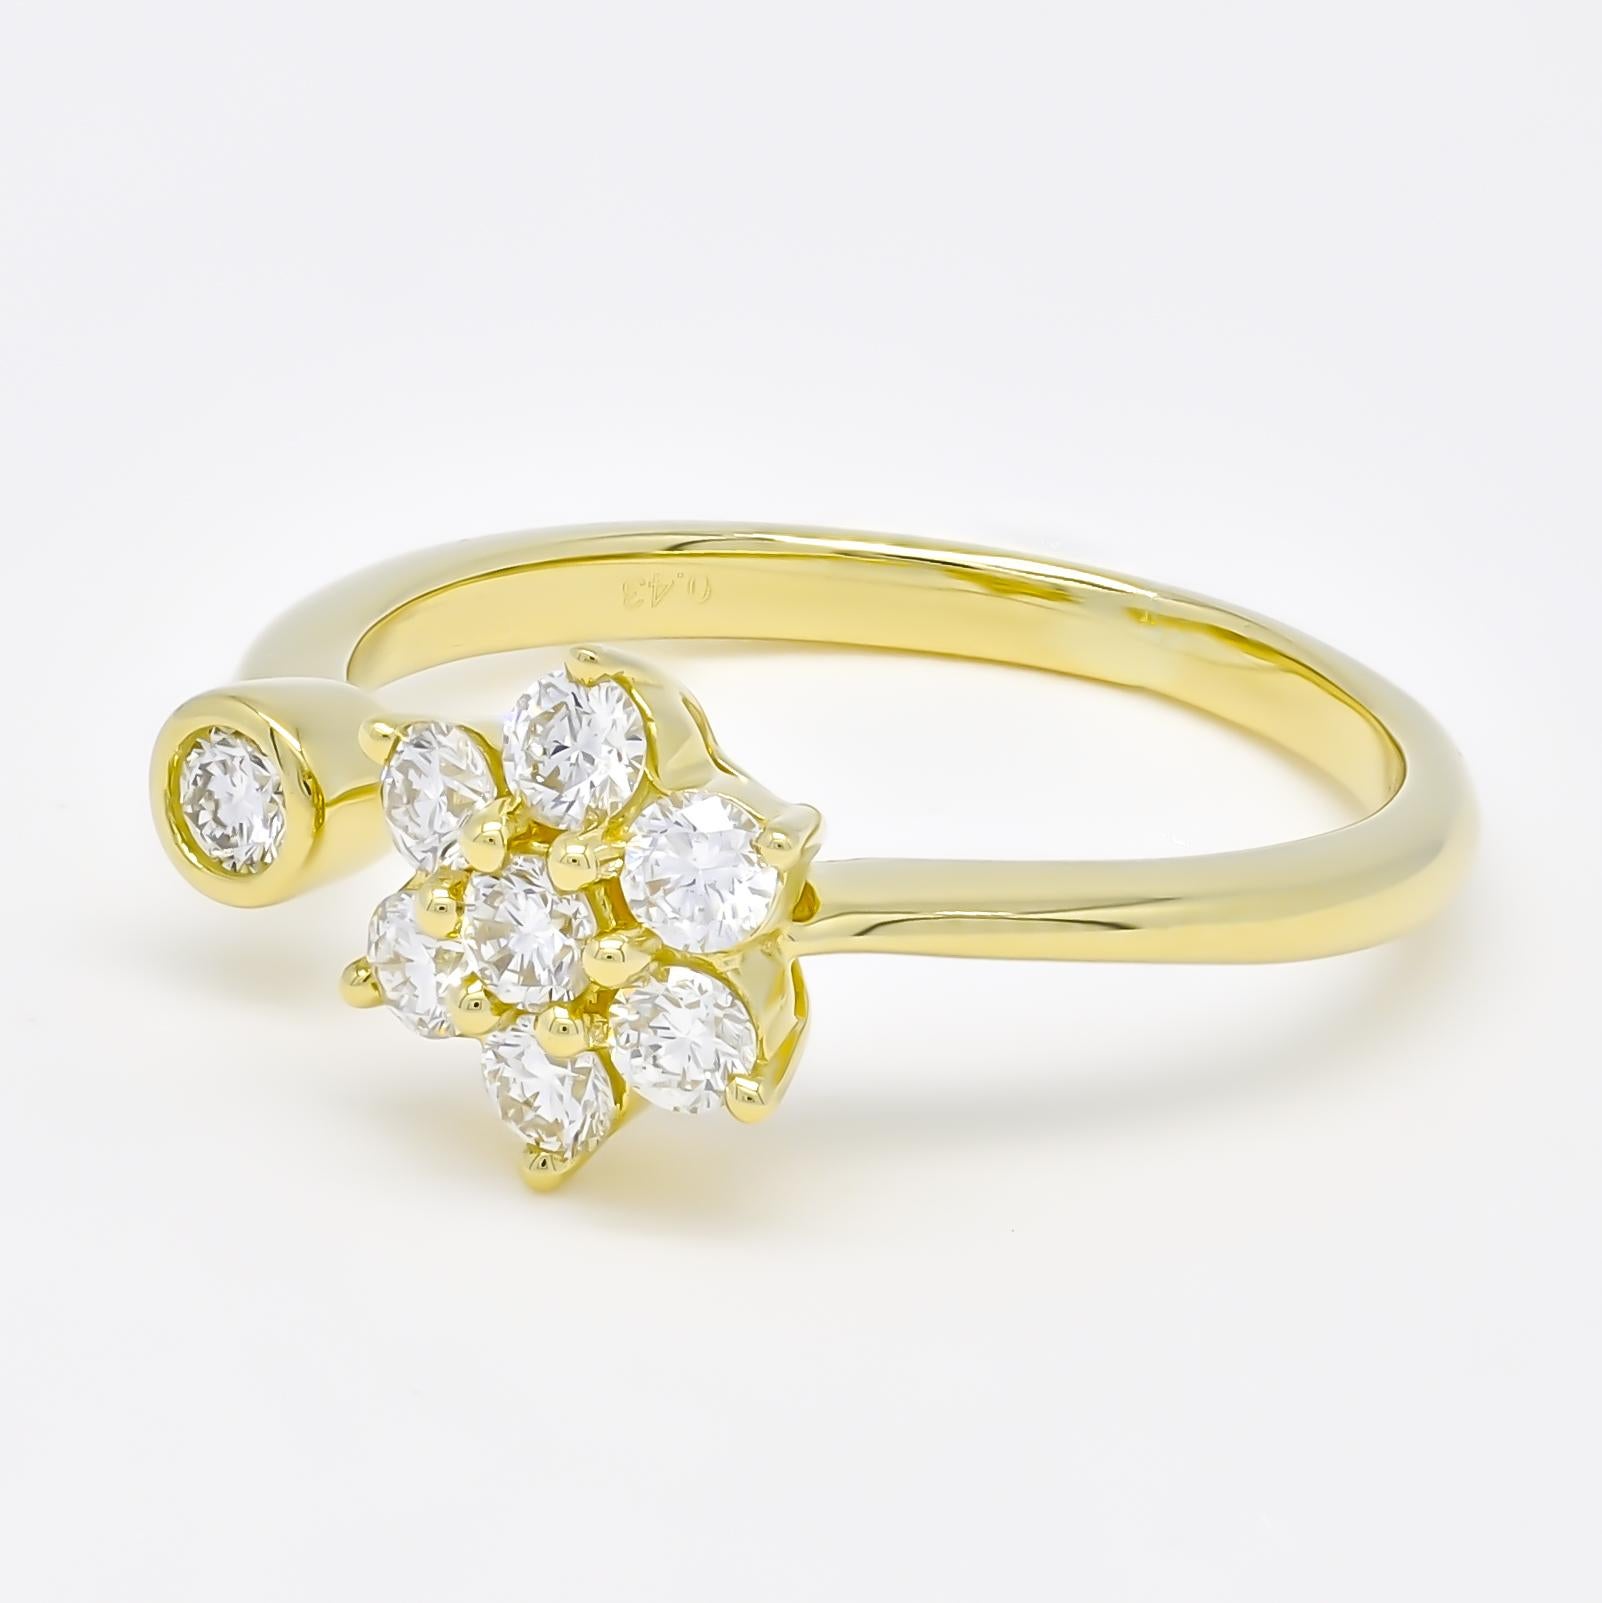 Der moderne Solitärring mit offenem Schaft ist eine moderne Variante des klassischen Solitär-Verlobungsrings. Bei diesem Ring ist eine Gruppe kleinerer Diamanten in Form einer Blume in ein schlankes Band mit offenem Schaft gefasst.

Der offene